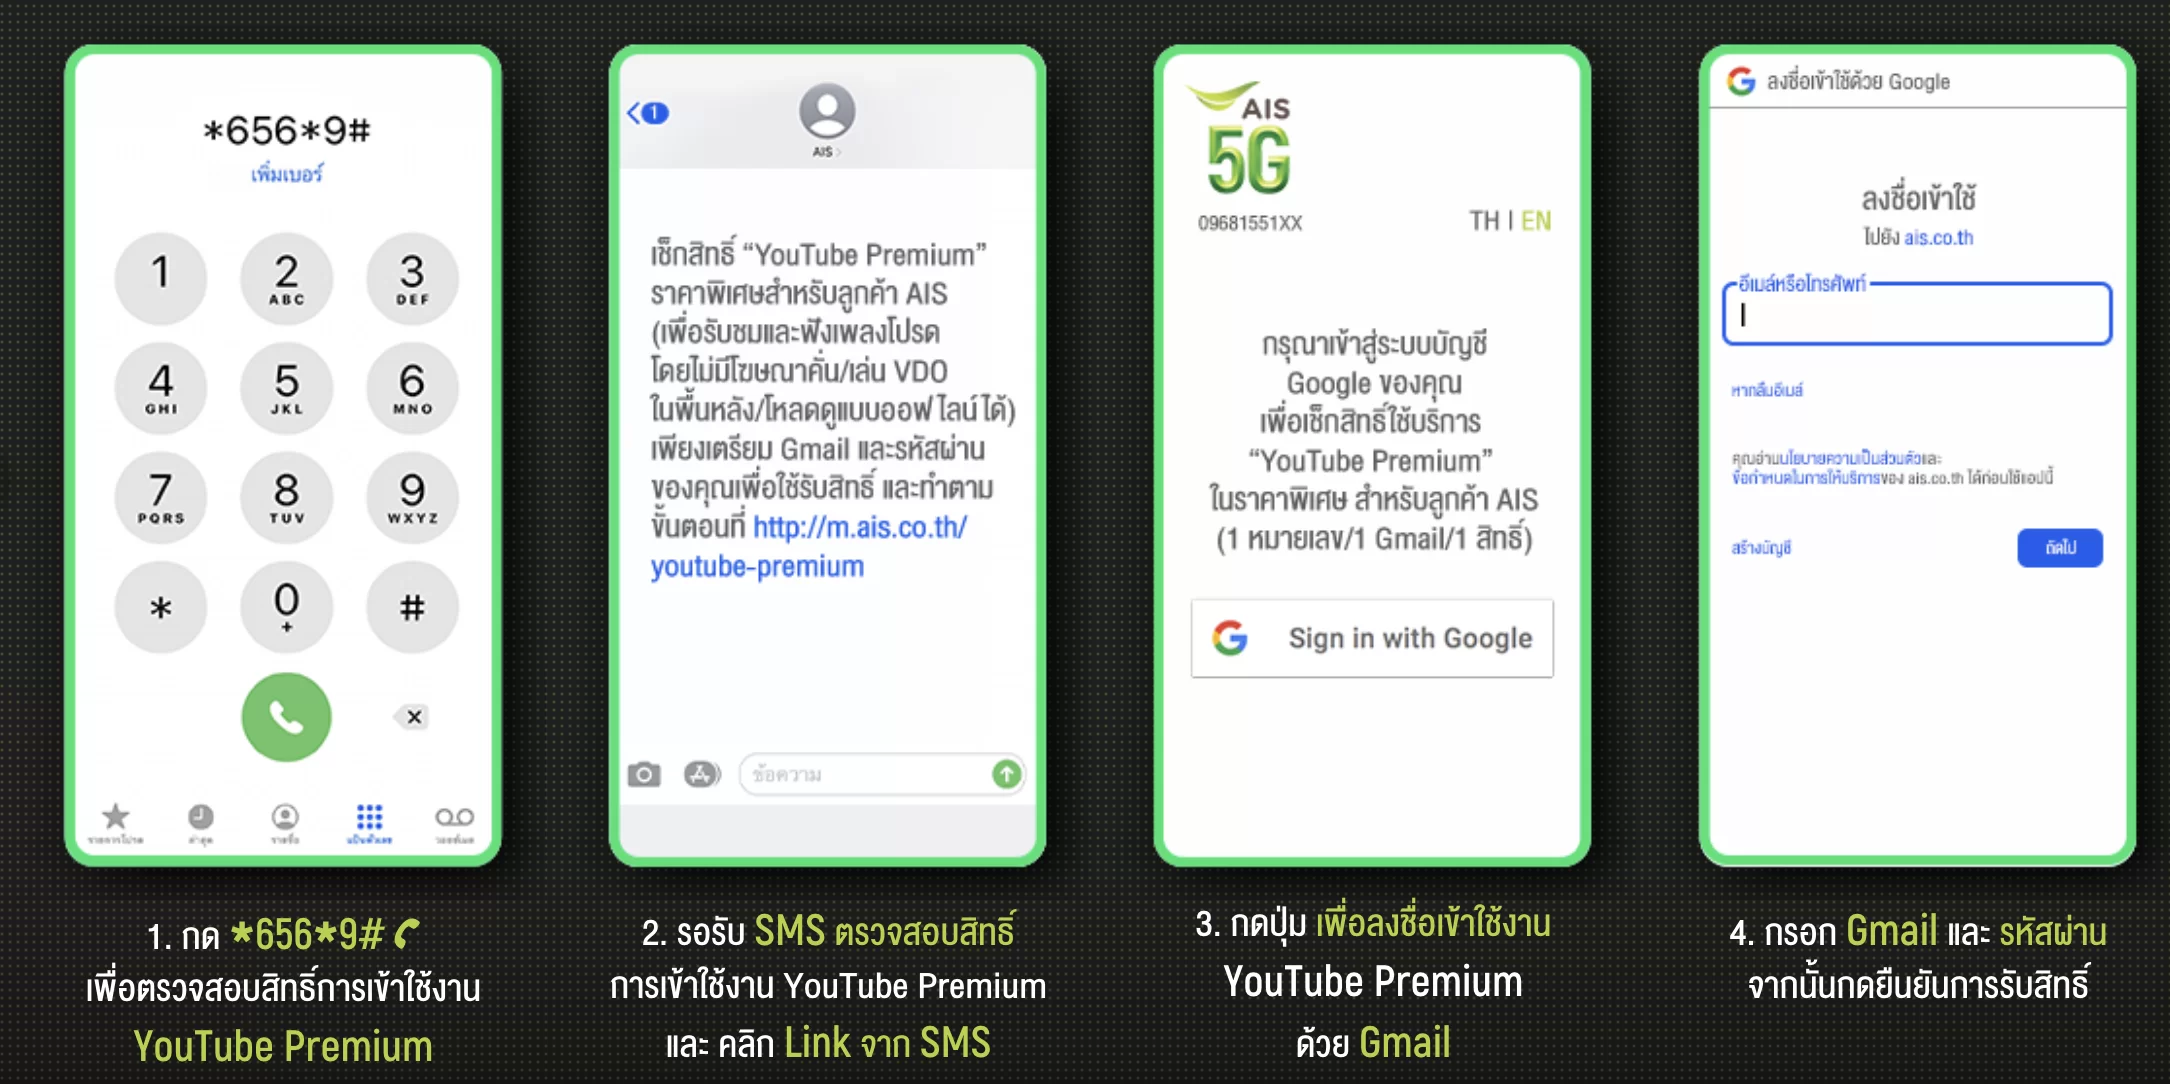 ขั้นตอนการสมัคร Youtube Premium สำหรับผู้ใช้บริการ AIS เพื่อรับสิทธิ์ 159 บาทต่อเดือน